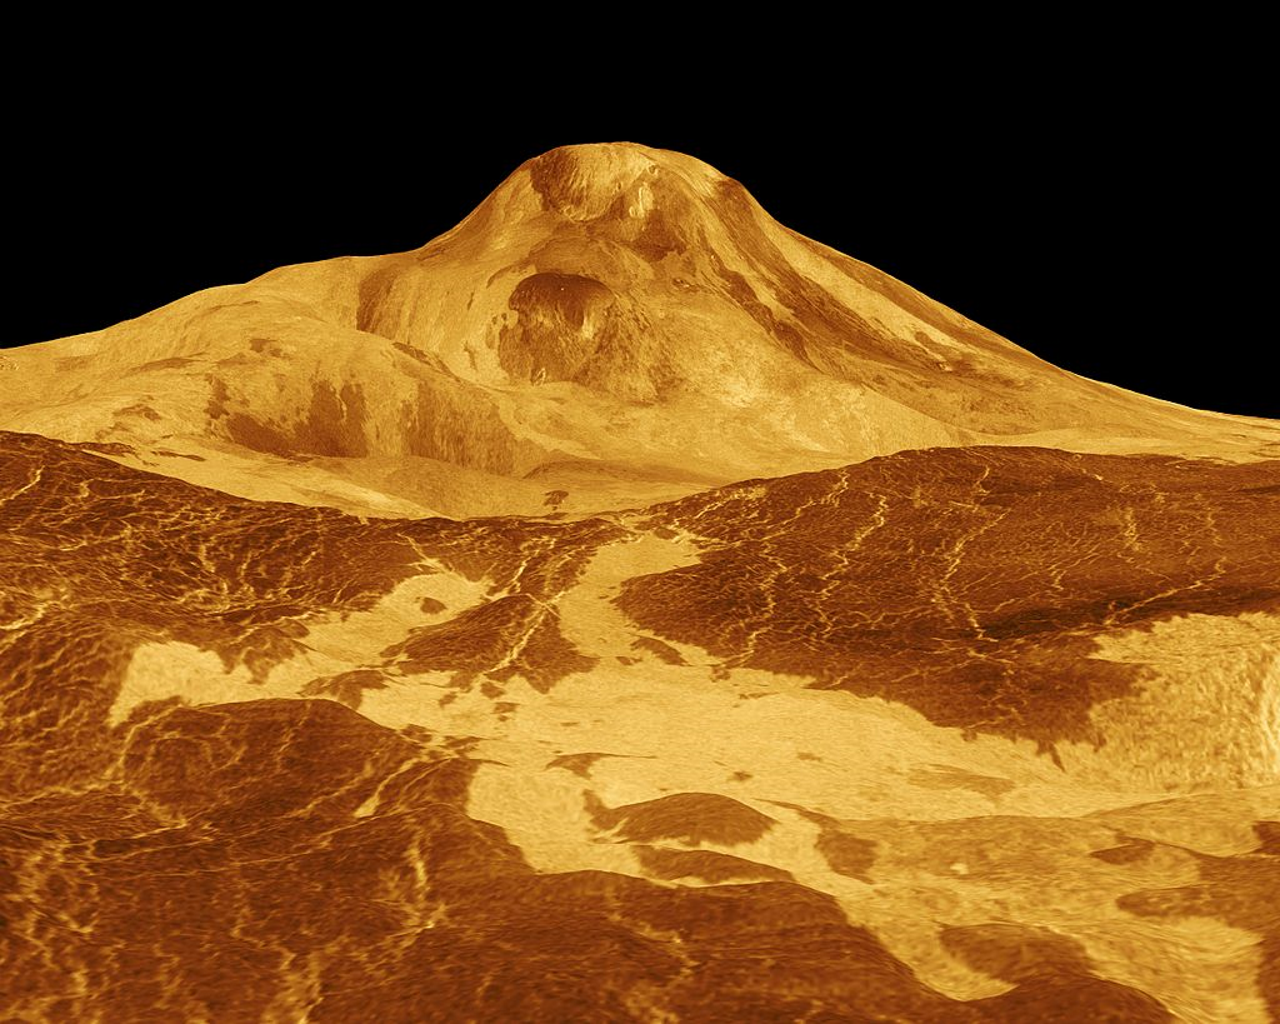 Найвищий венеріанський вулкан — гора Маат. Зображення створене за допомогою радіолокаційних даних космічного апарата Магеллан. Насправді сам вулкан темно-сірий, а небо - зеленувато-жовте. NASA - Jet Propulsion Laboratory / Wikimedia Commons